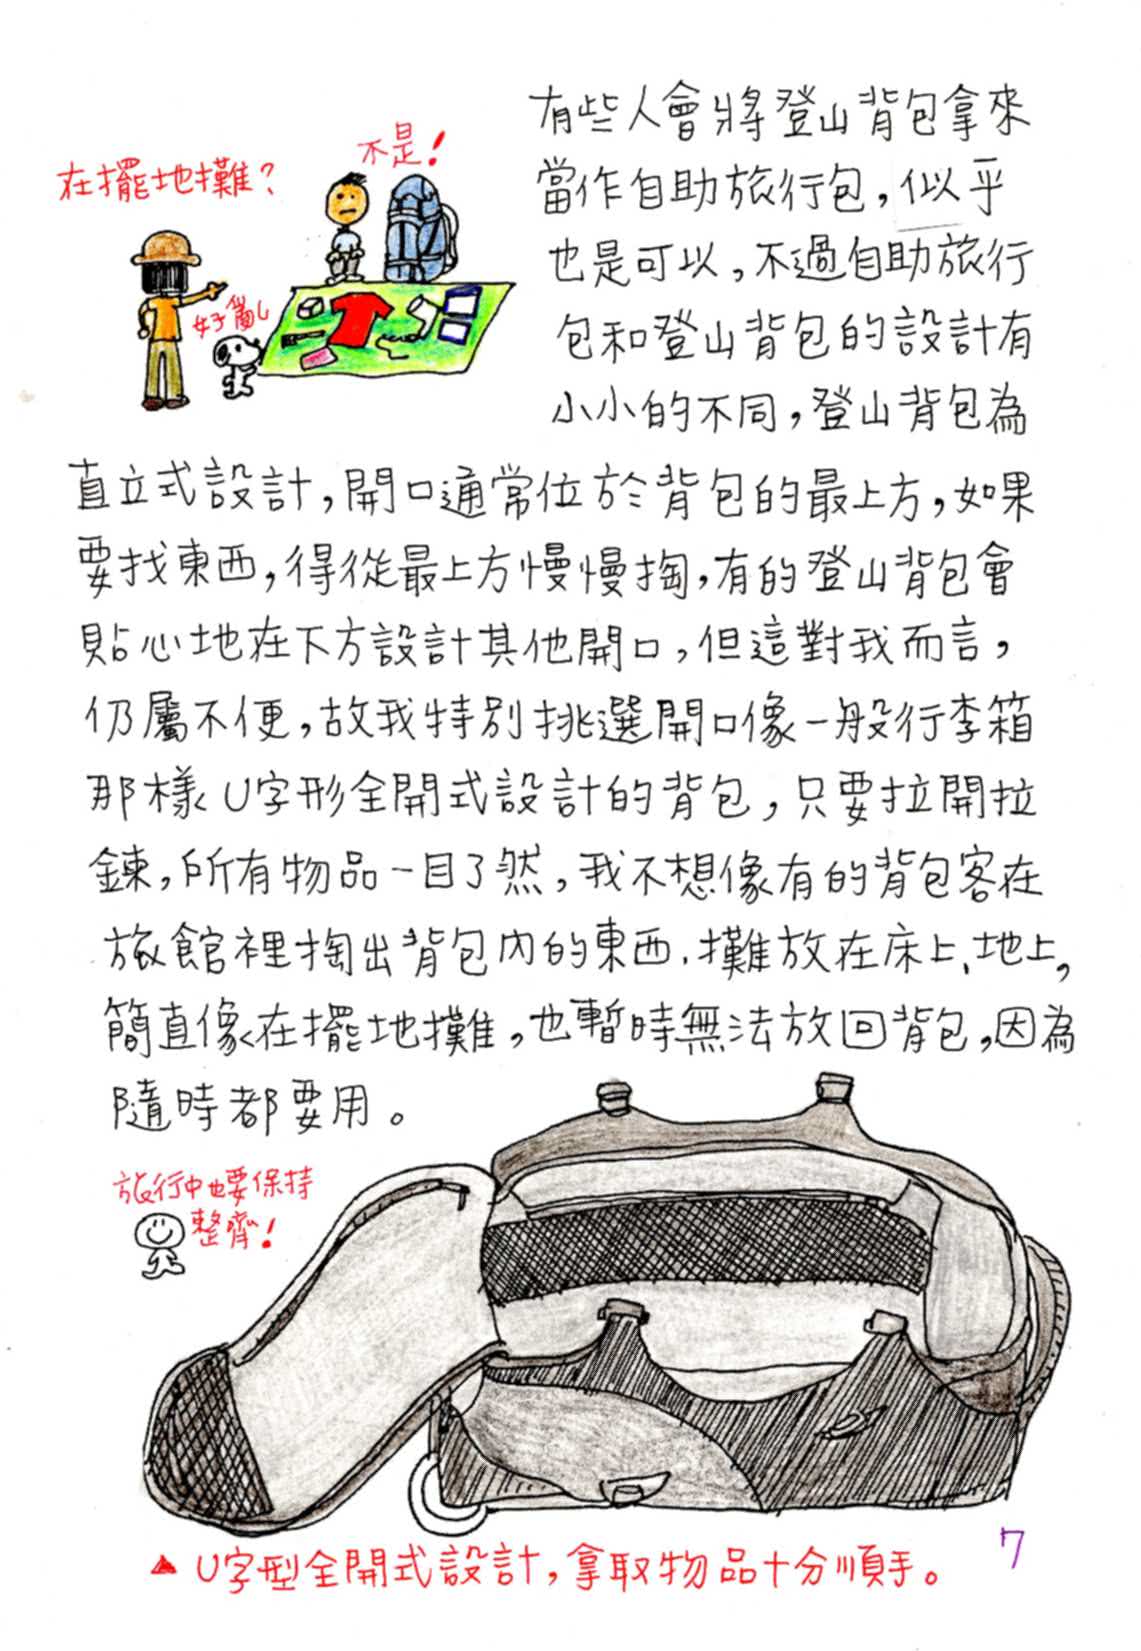 Peiyu的手繪自助旅行背包